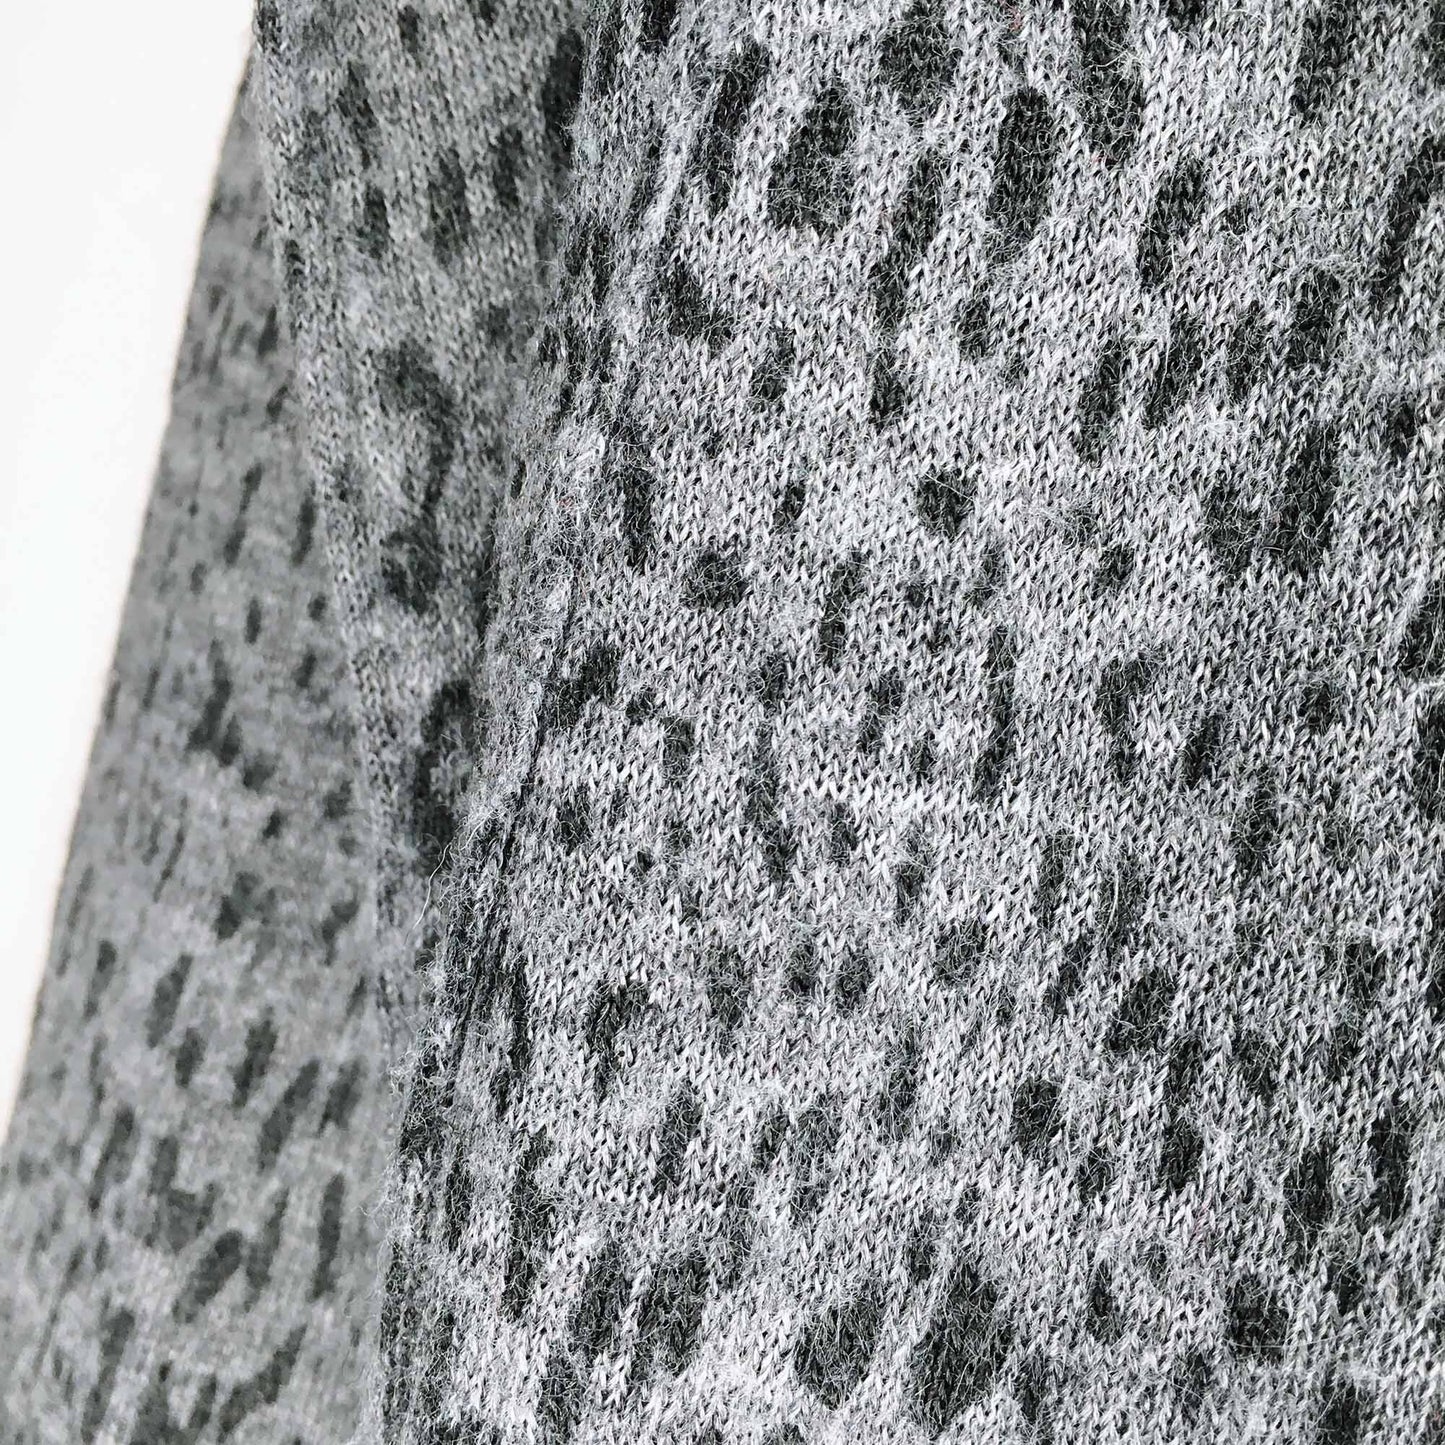 rebecca taylor leopard print v-neck sweater - size xs